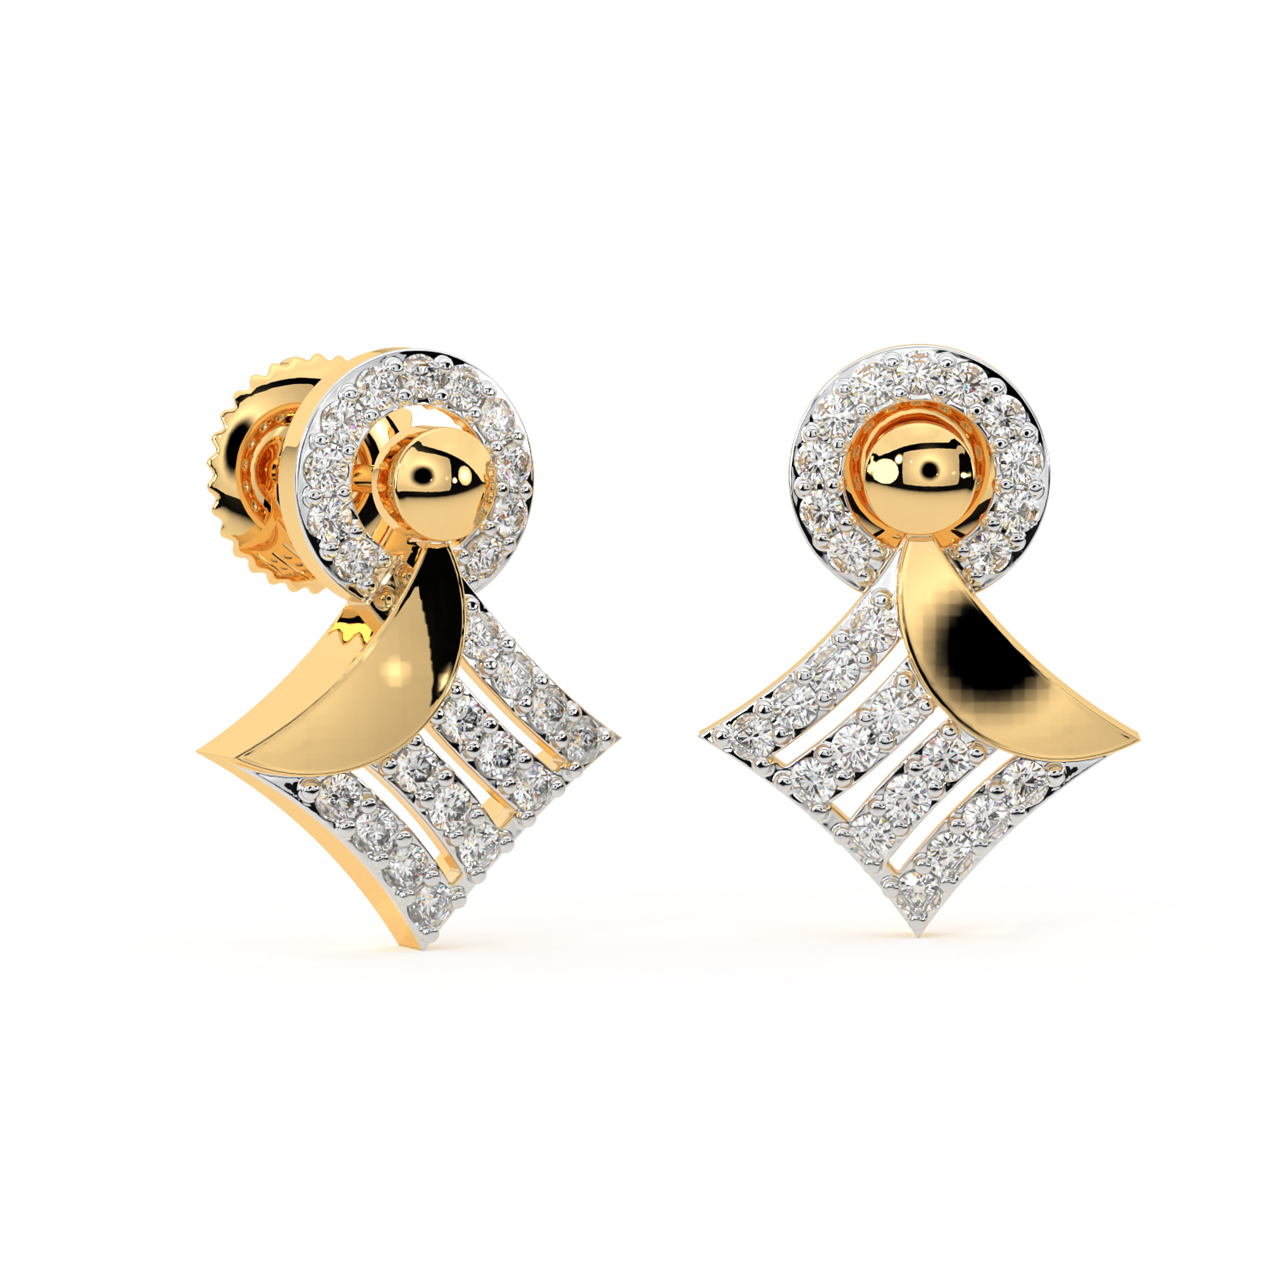 Share more than 144 gold short earrings design latest